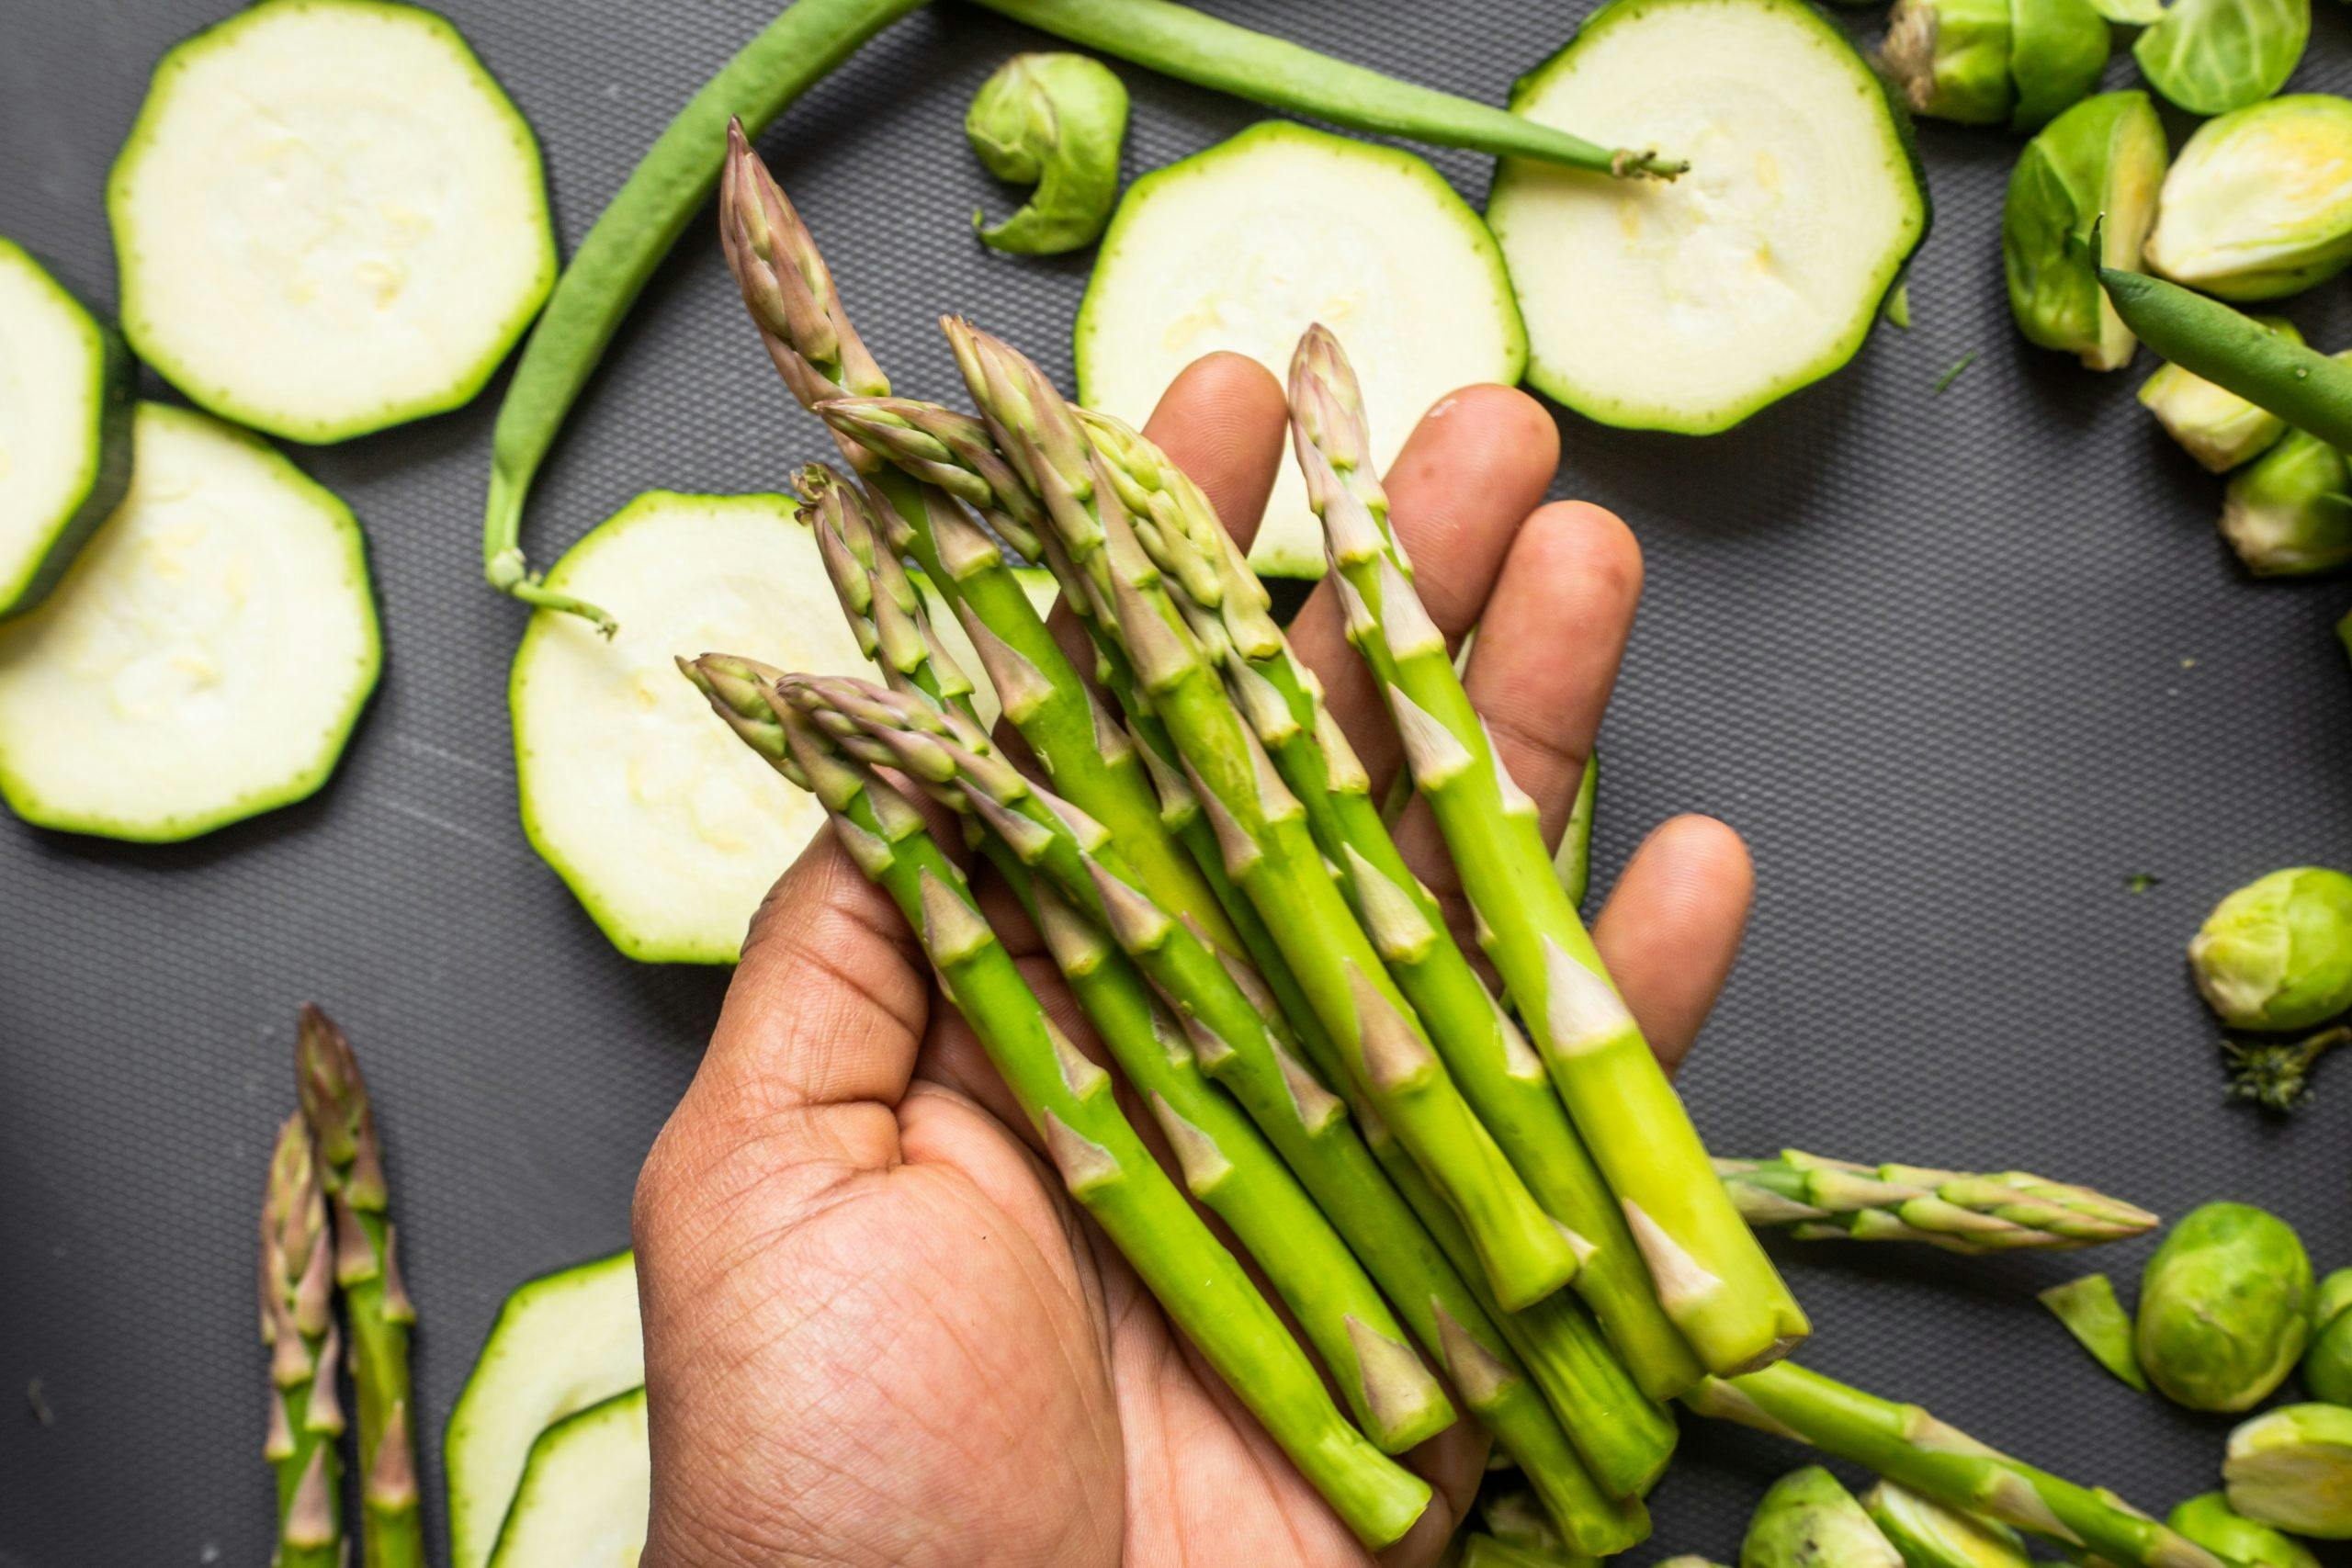 Asparagus Nutrition